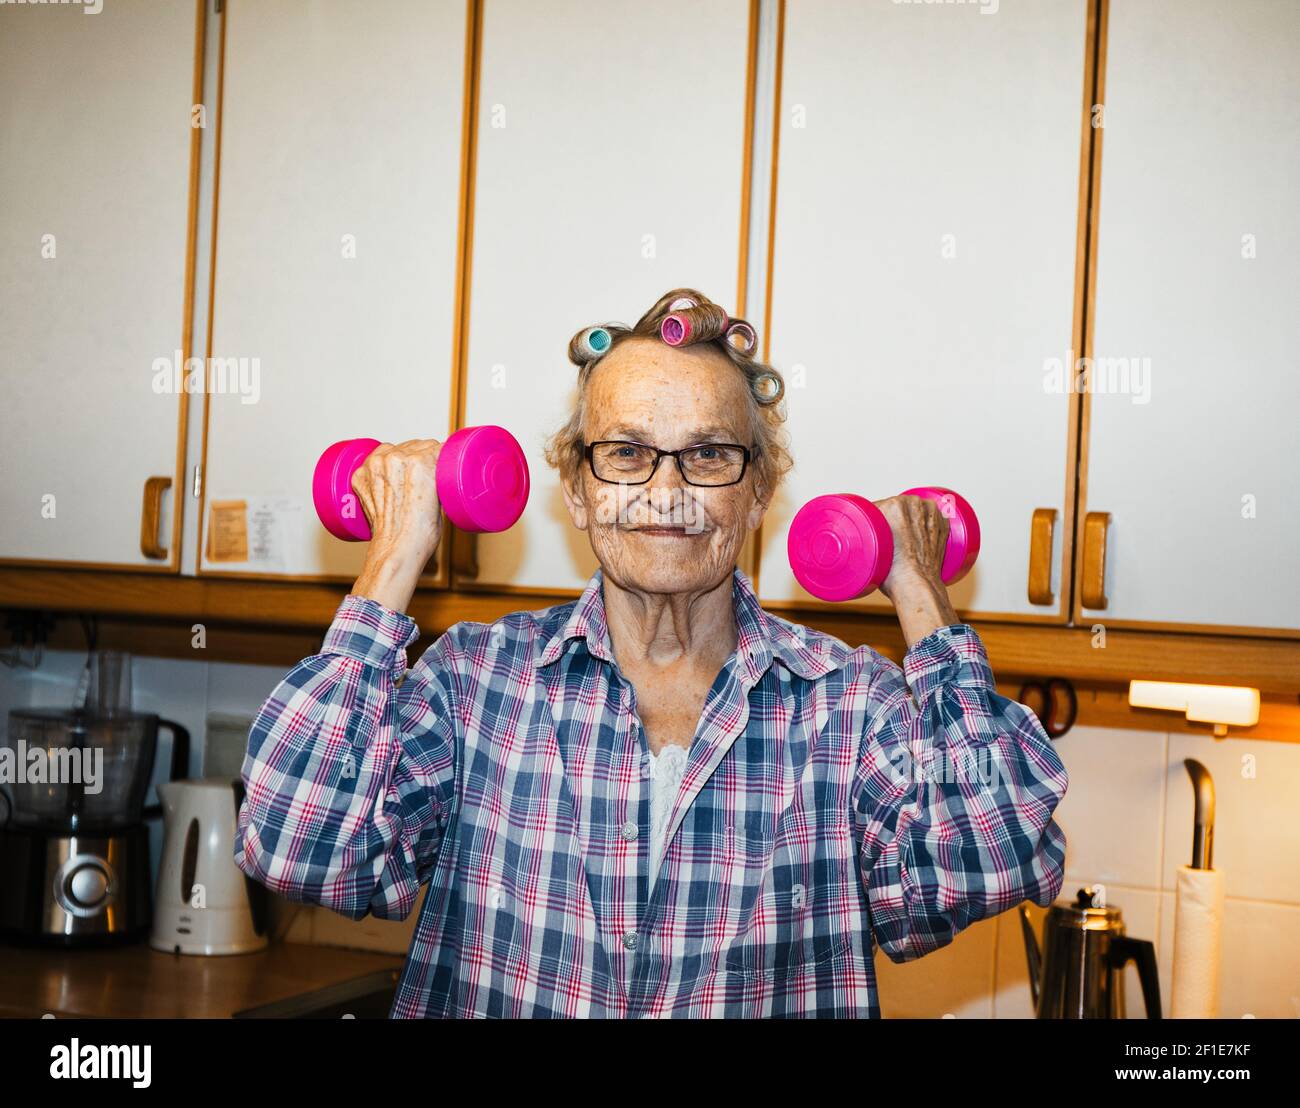 Lächelnd fröhlich ältere schwedische Frau mit rosa Hanteln in der Küche. Konzept des aktiven Lebensstils, Fitness, Gesundheit Stockfoto